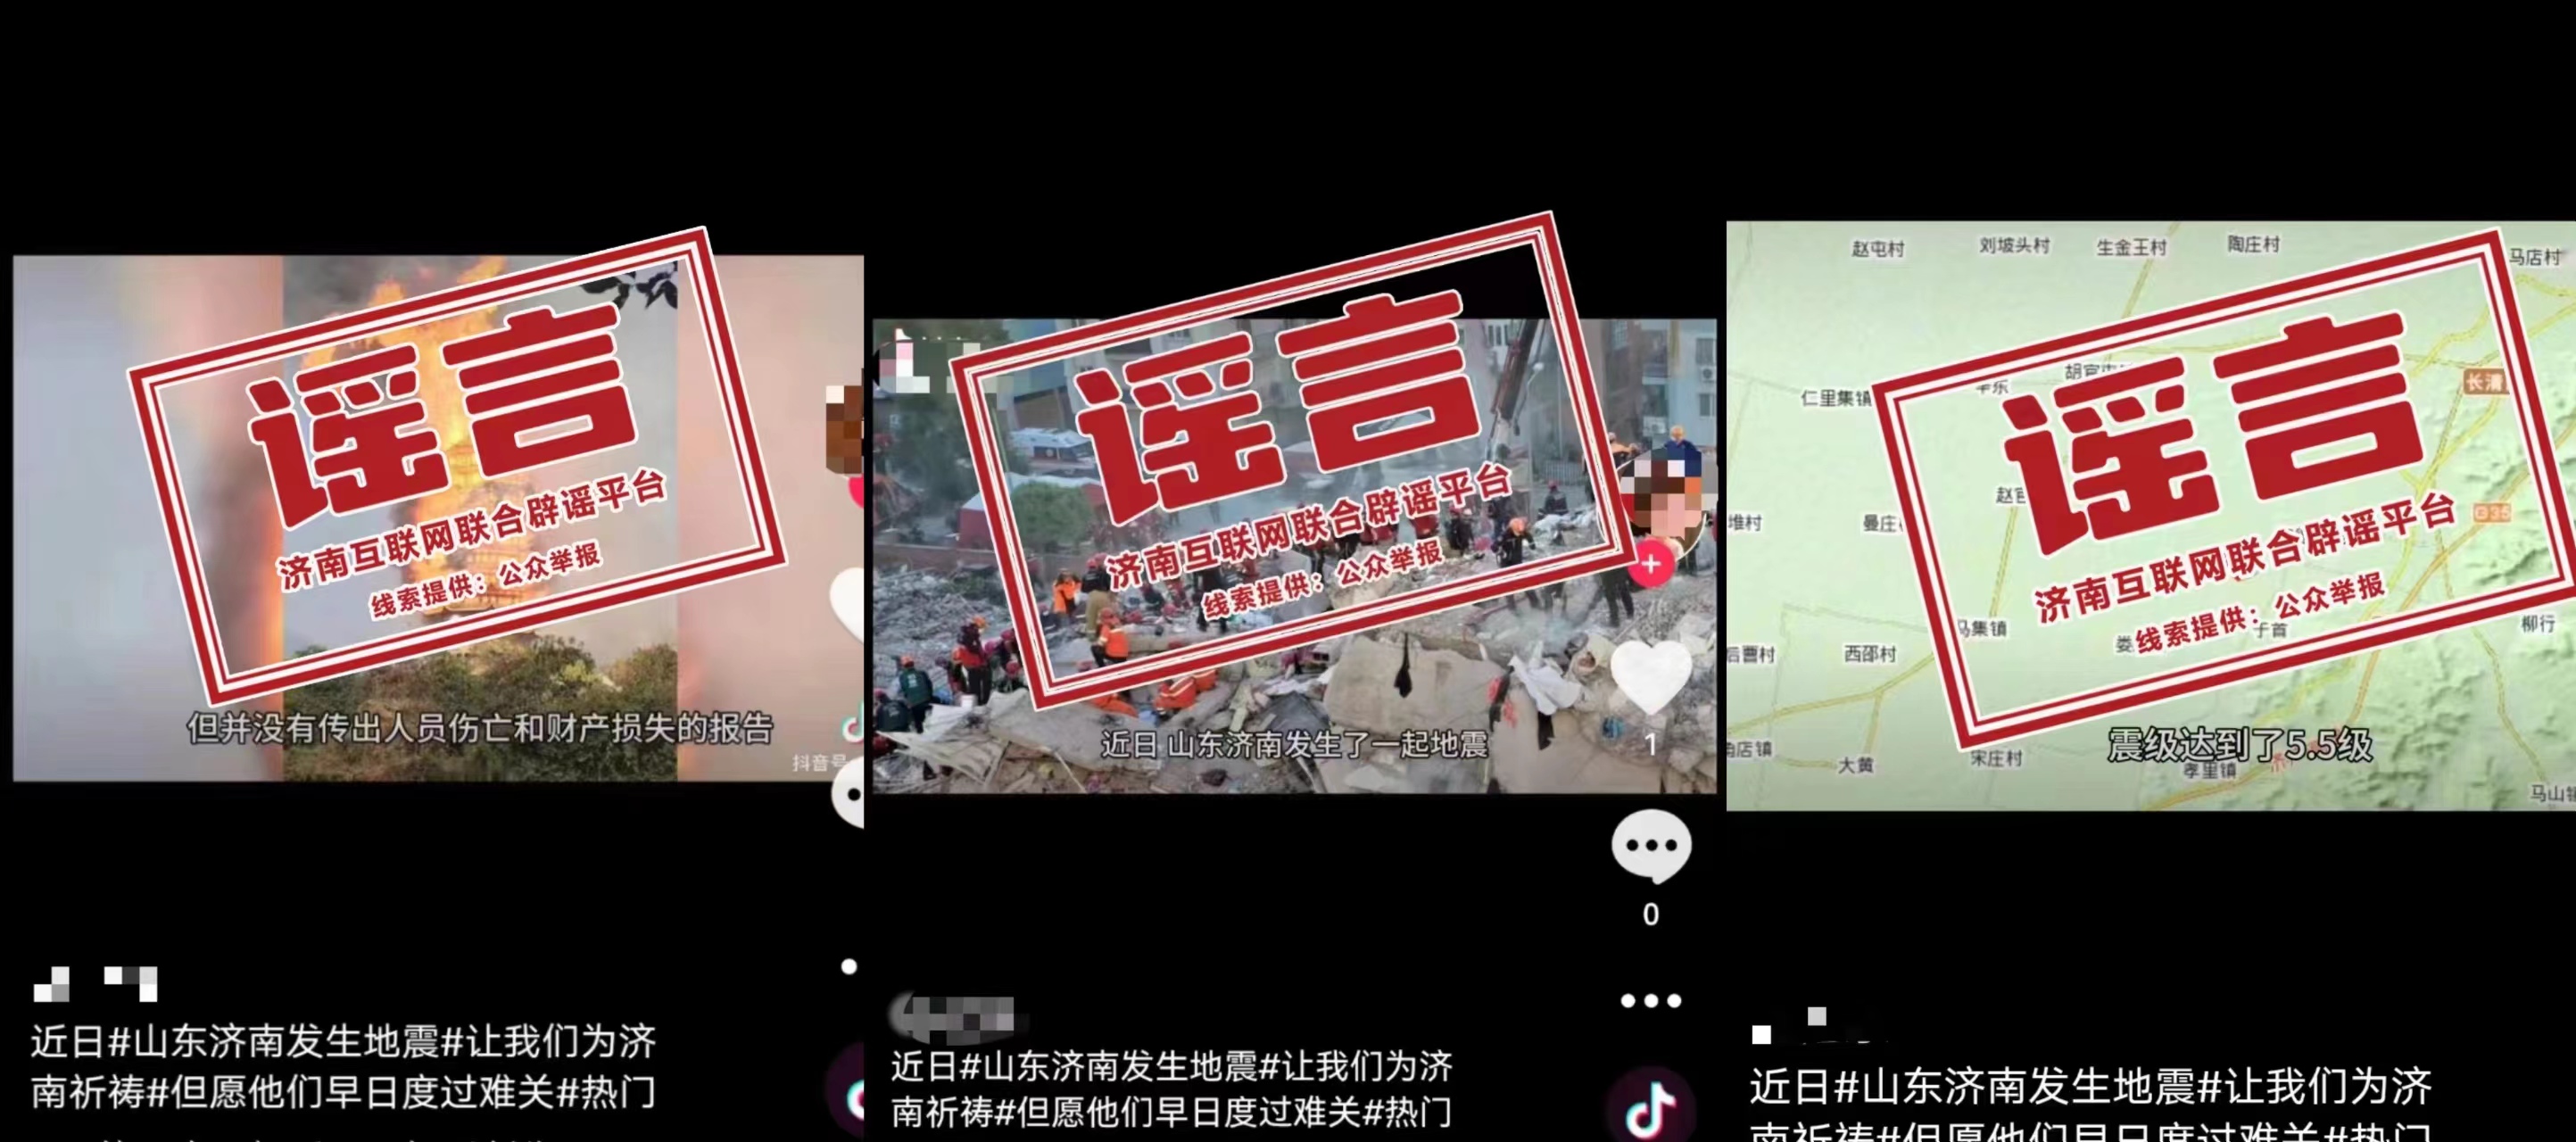 发布谣言的社交平台账号内容 图源
	：中国互联网联合辟谣平台